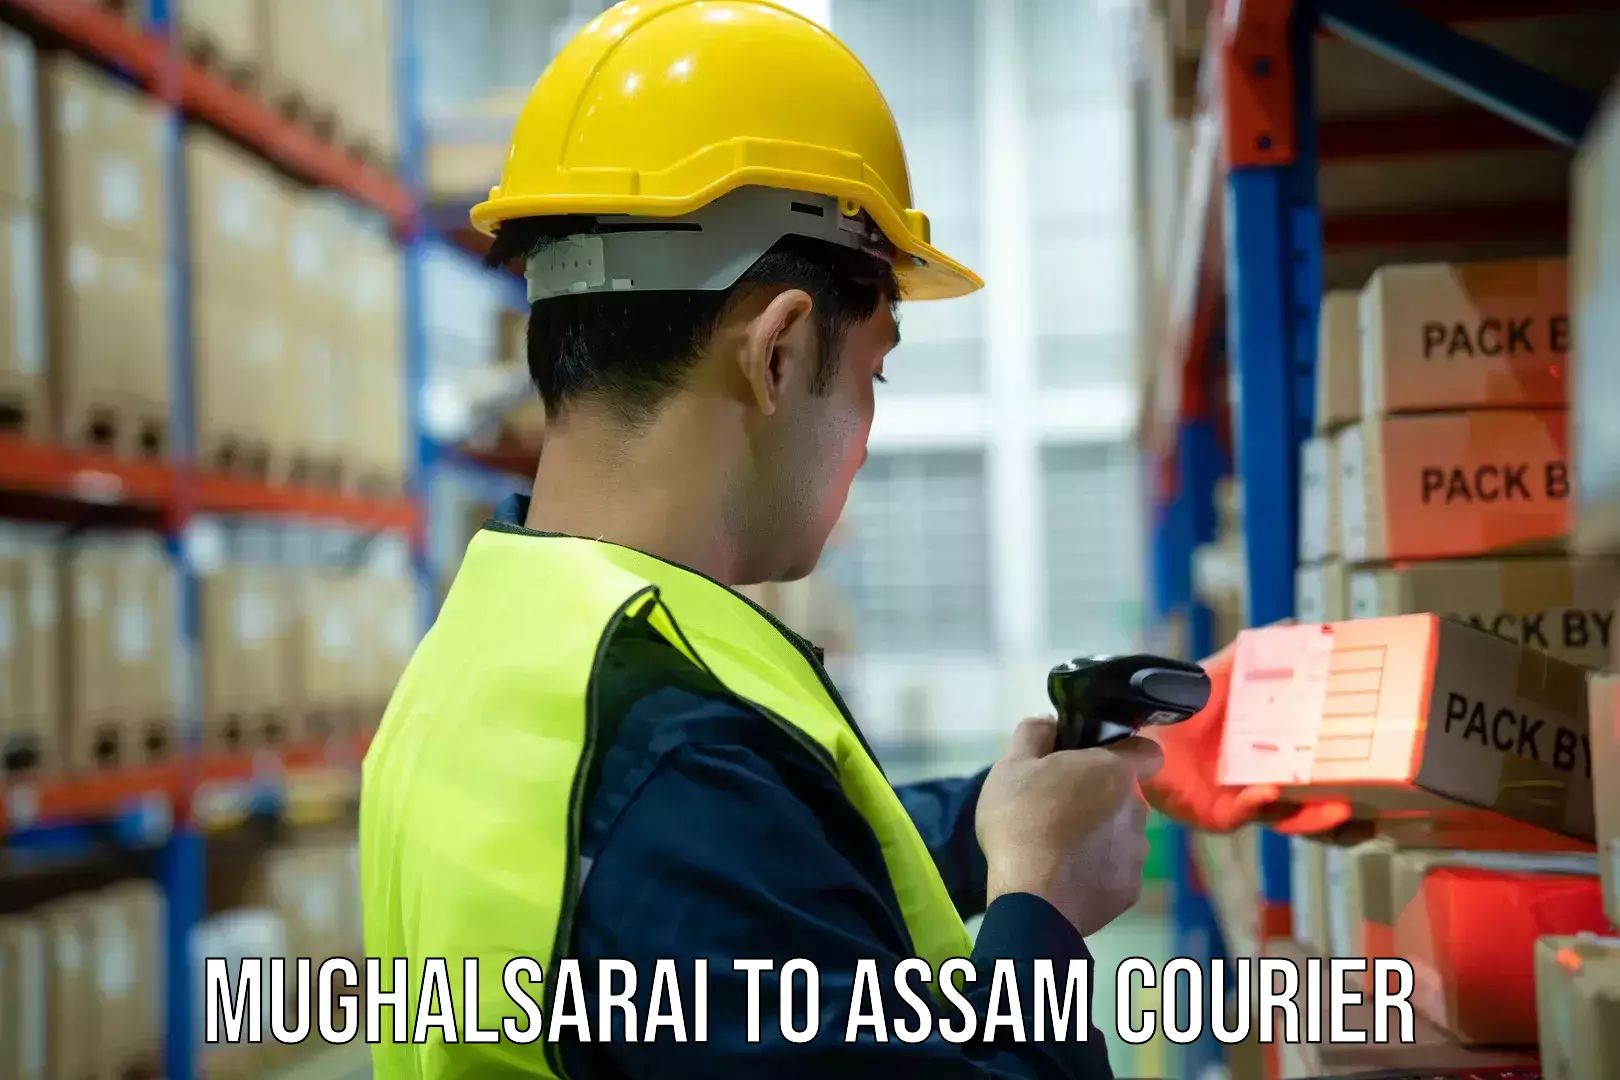 Customer-centric shipping Mughalsarai to Marigaon